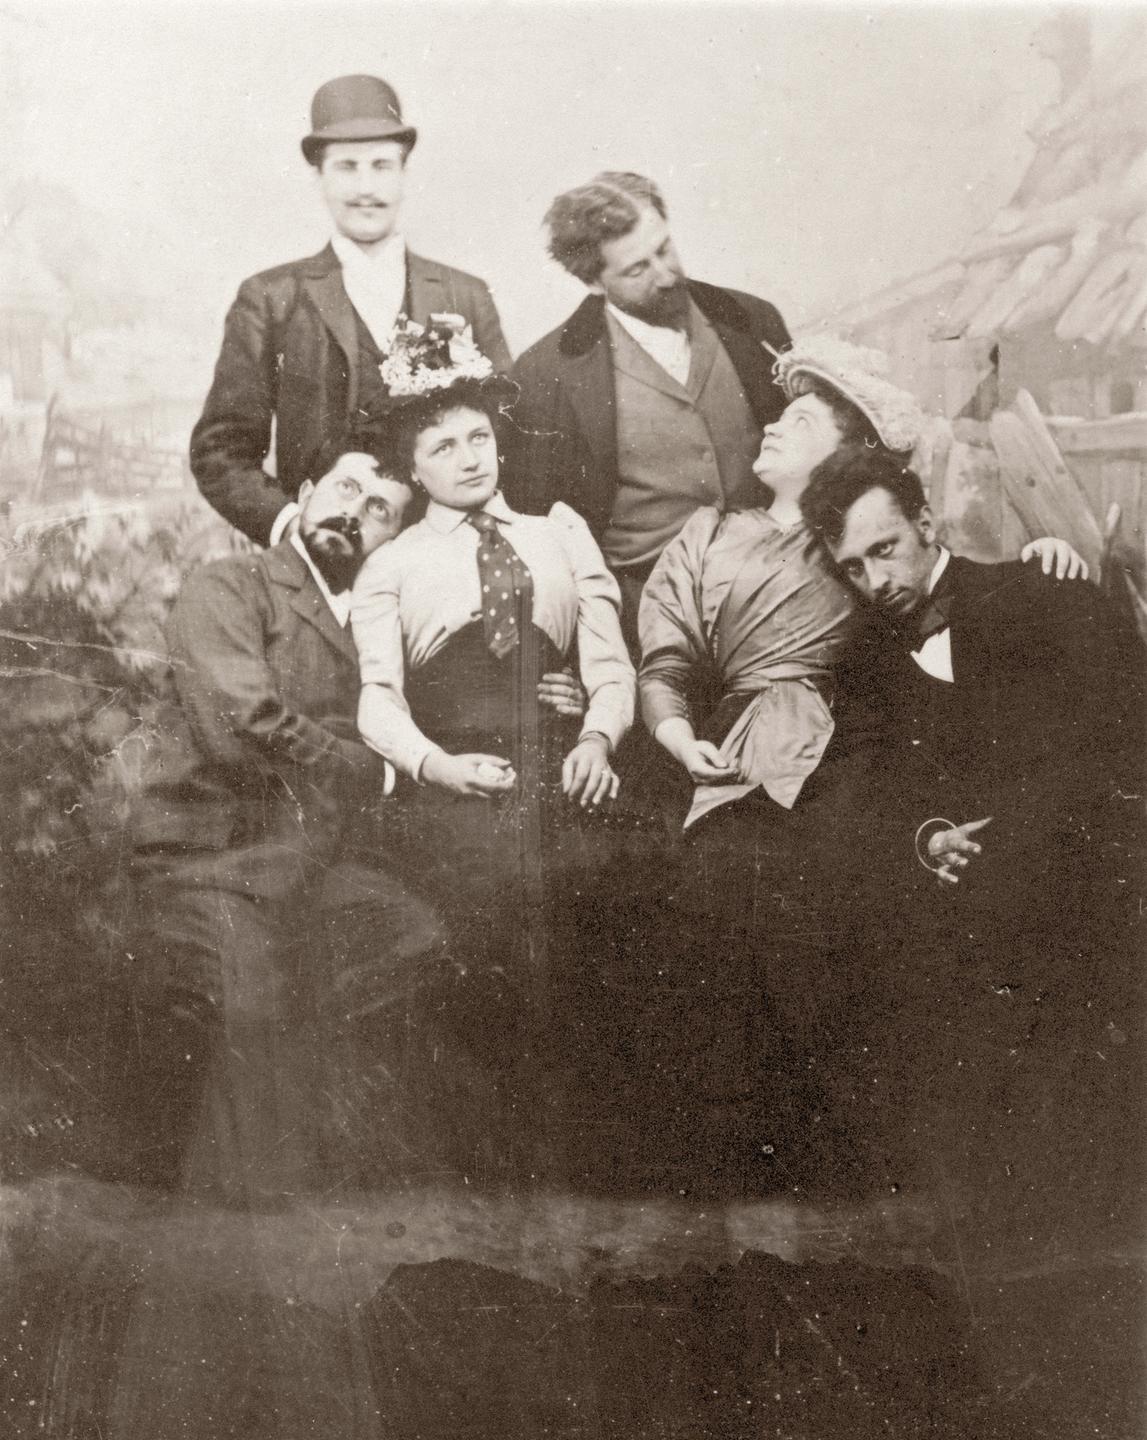 Historische Photographie im Prater von Wien (von links nach rechts): Hugo von Hofmannsthal, Arthur Schnitzler (stehend), Richard Beer-Hofmann, Felix Salten (sitzend) mit unbekannten Frauen. Um 1894.